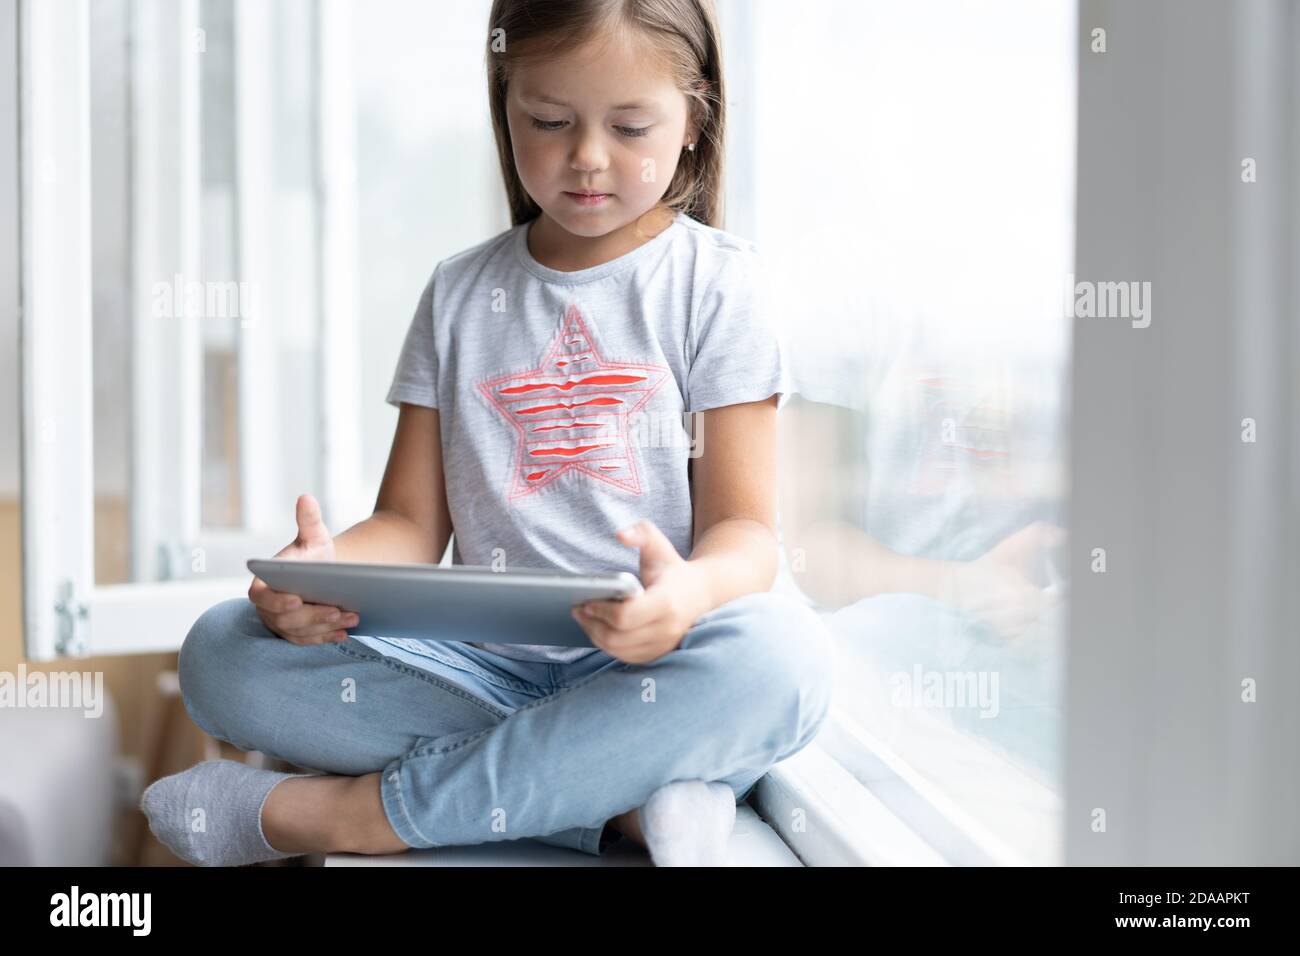 Nettes kleines Kind mit einem digitalen Tablet in einem Zuhause mit großem Fenster. Stockfoto